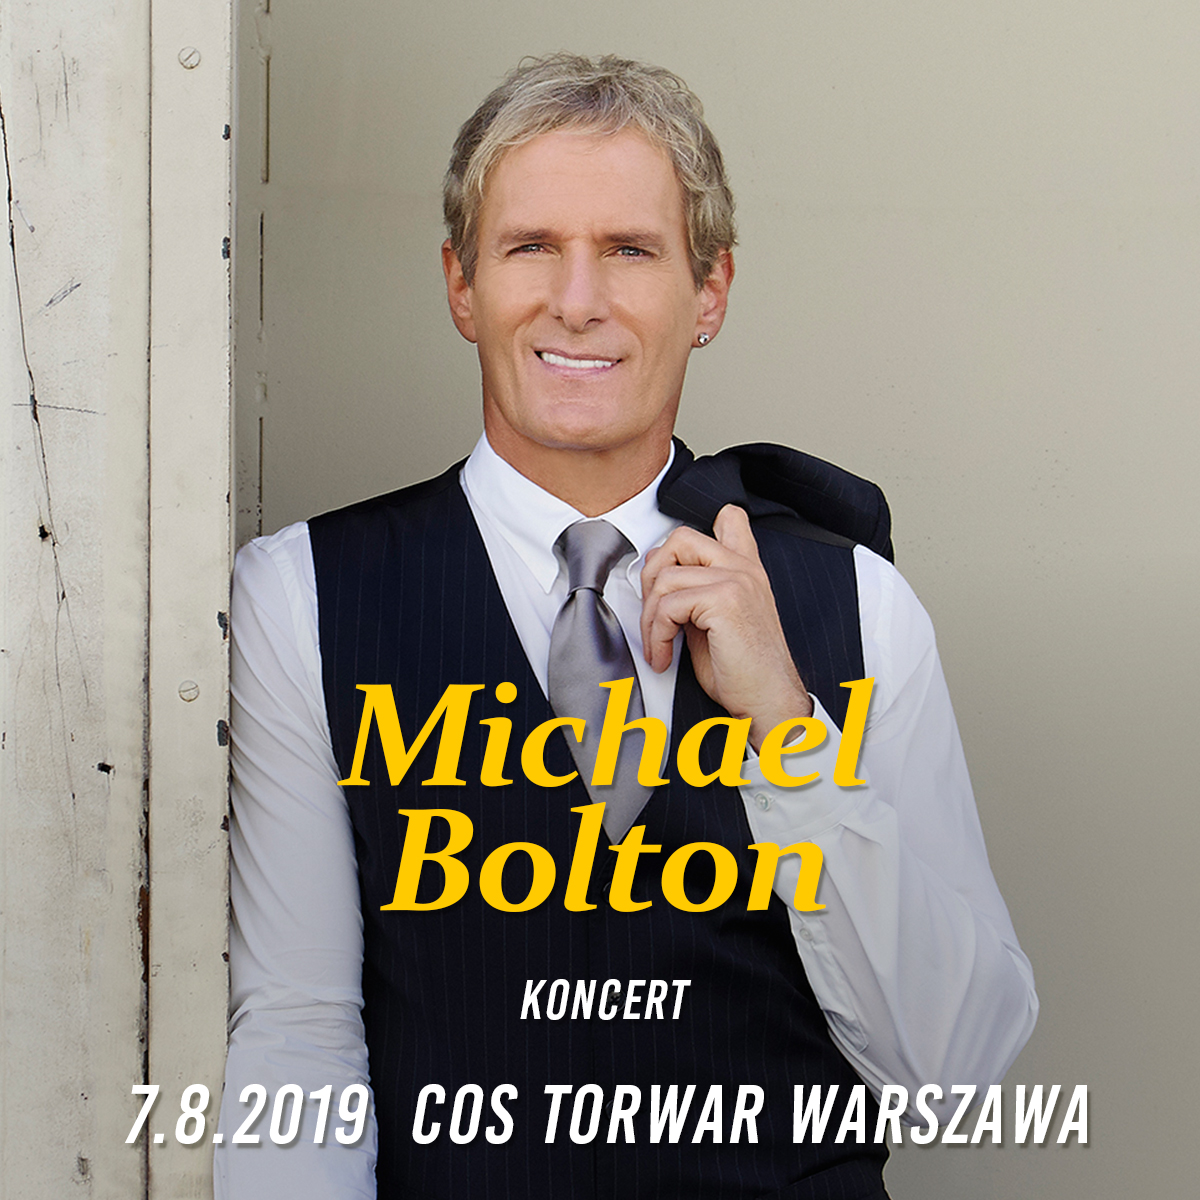 Michael Bolton – twórca najpiękniejszych ballad wystąpi w Polsce! 